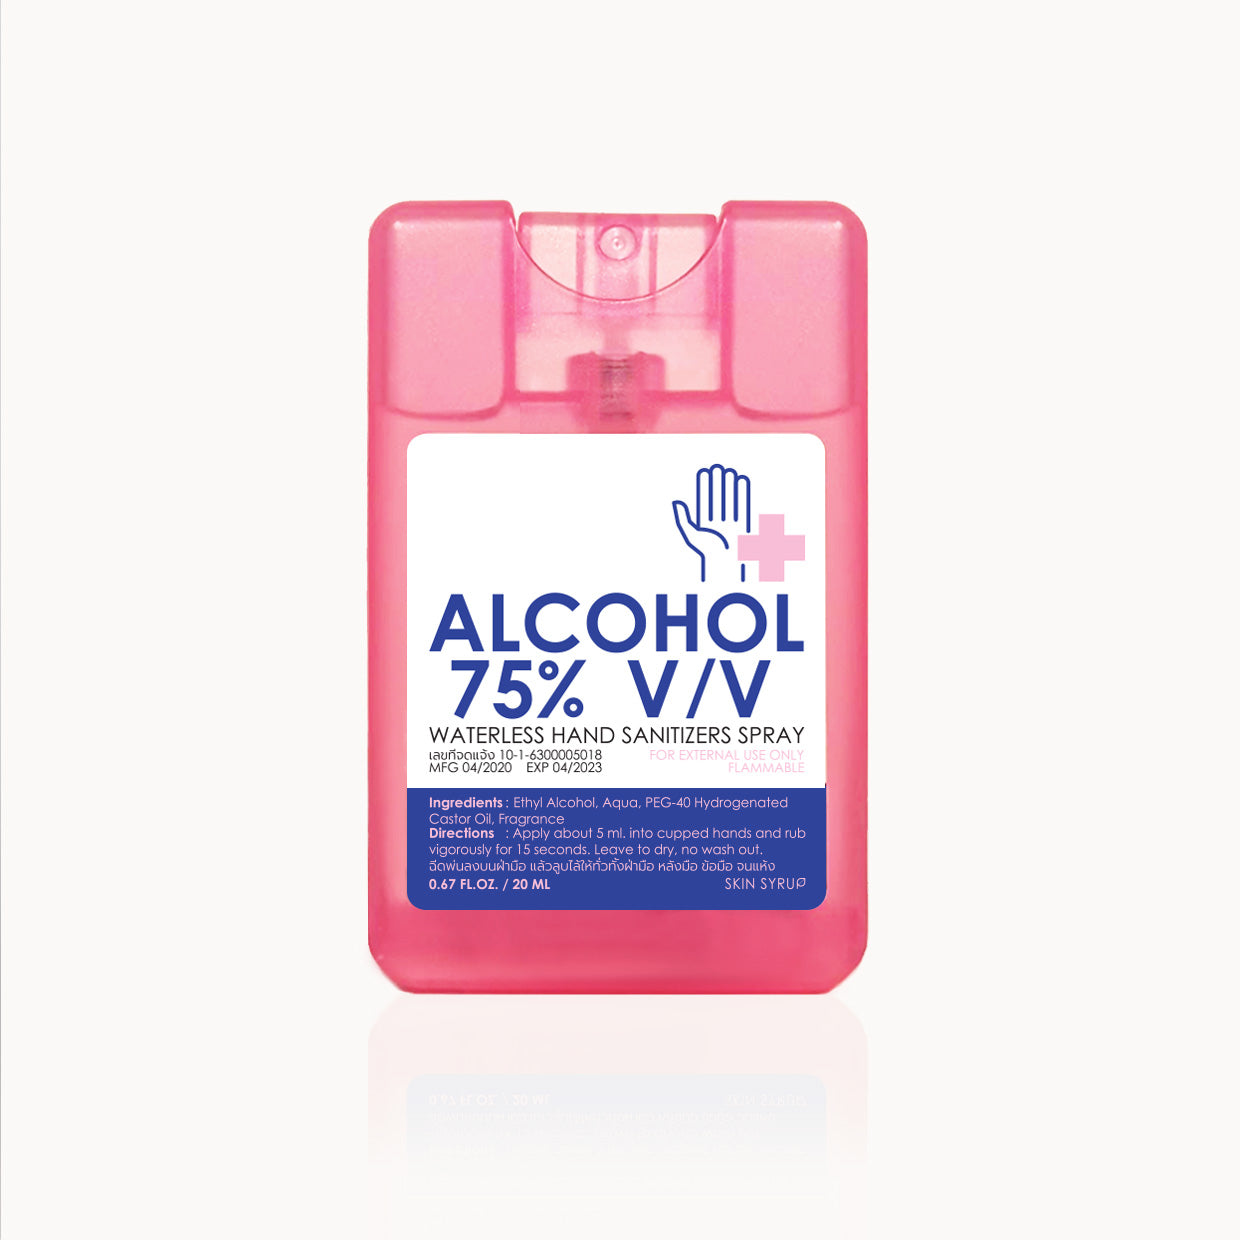 Alcohol spray card 75%v/v